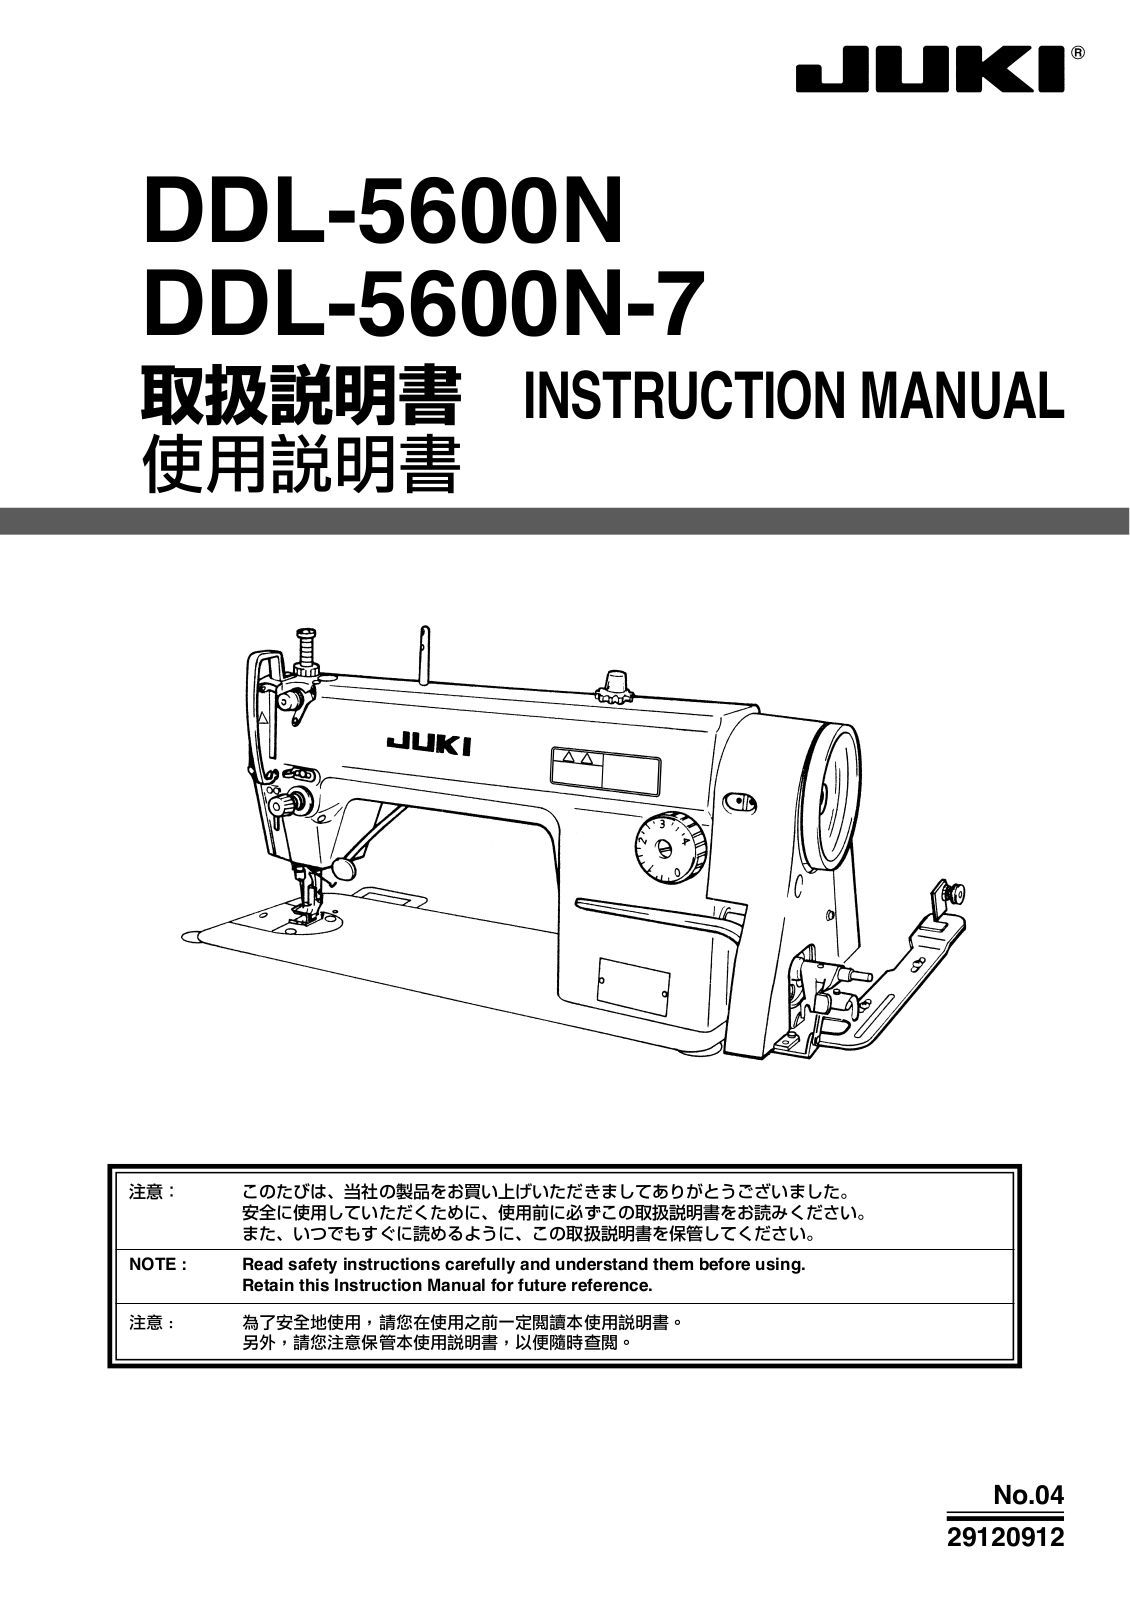 JUKI DDL-5600N, DDL-5600N-7 Instruction Manual